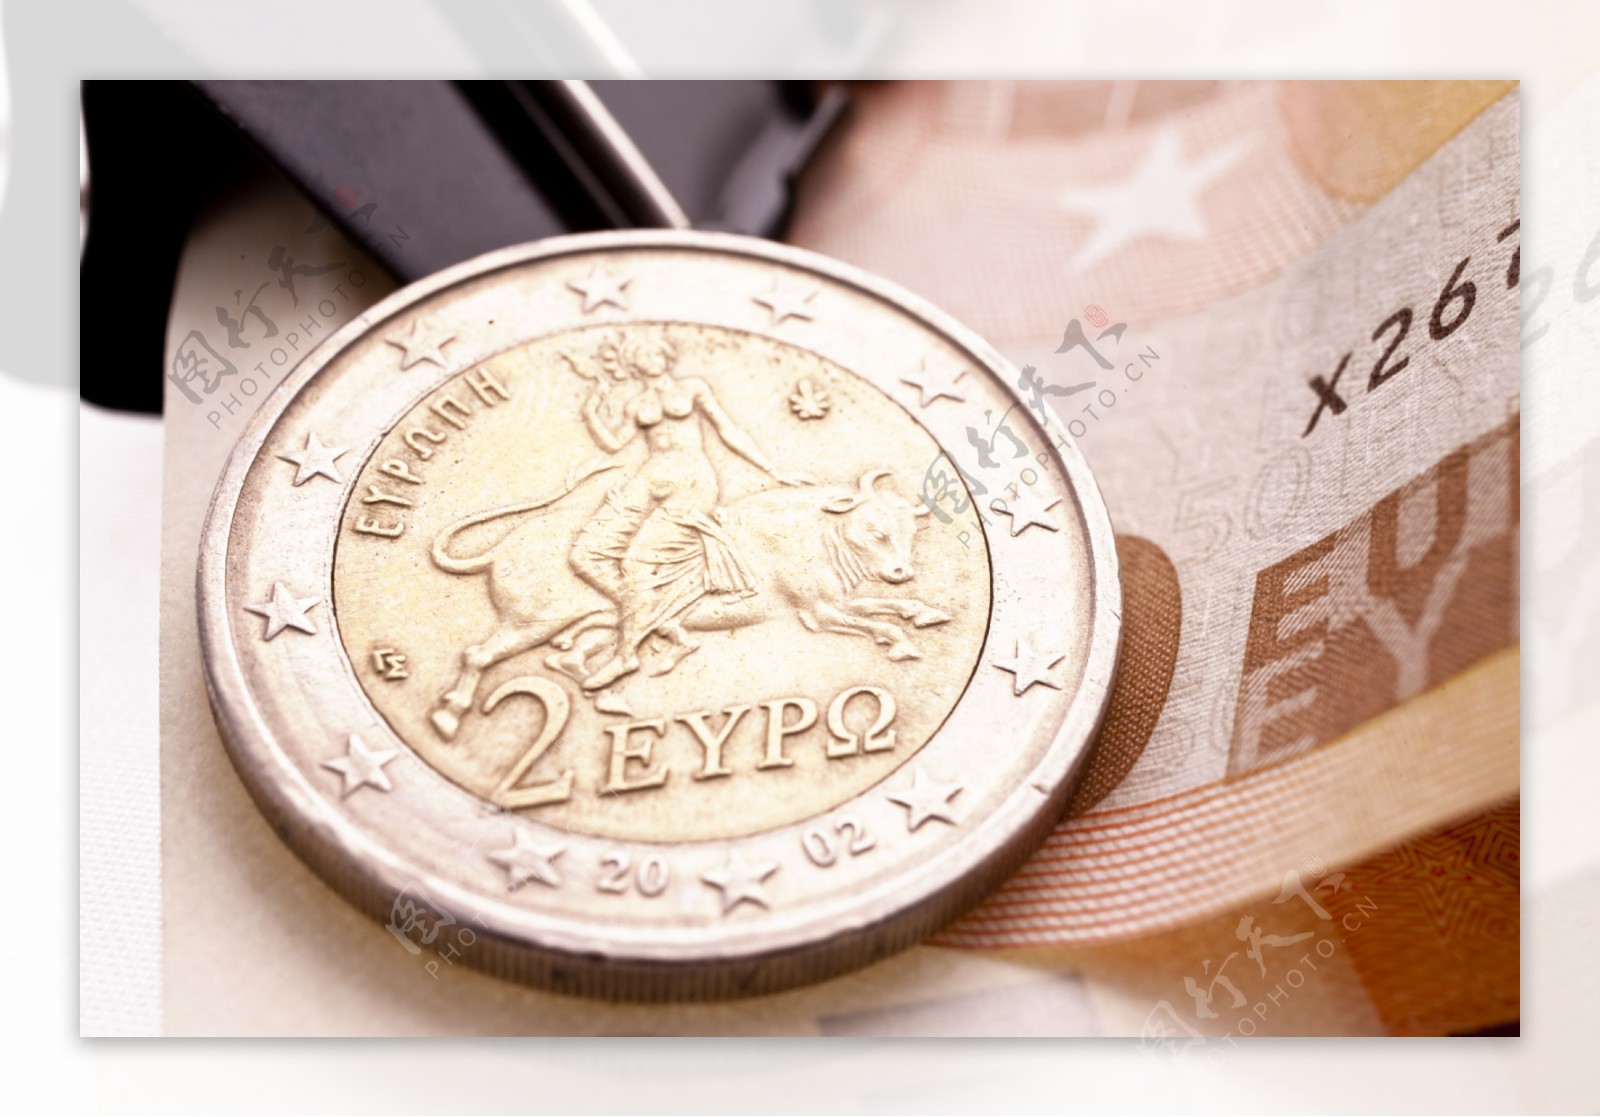 希腊的欧元硬币